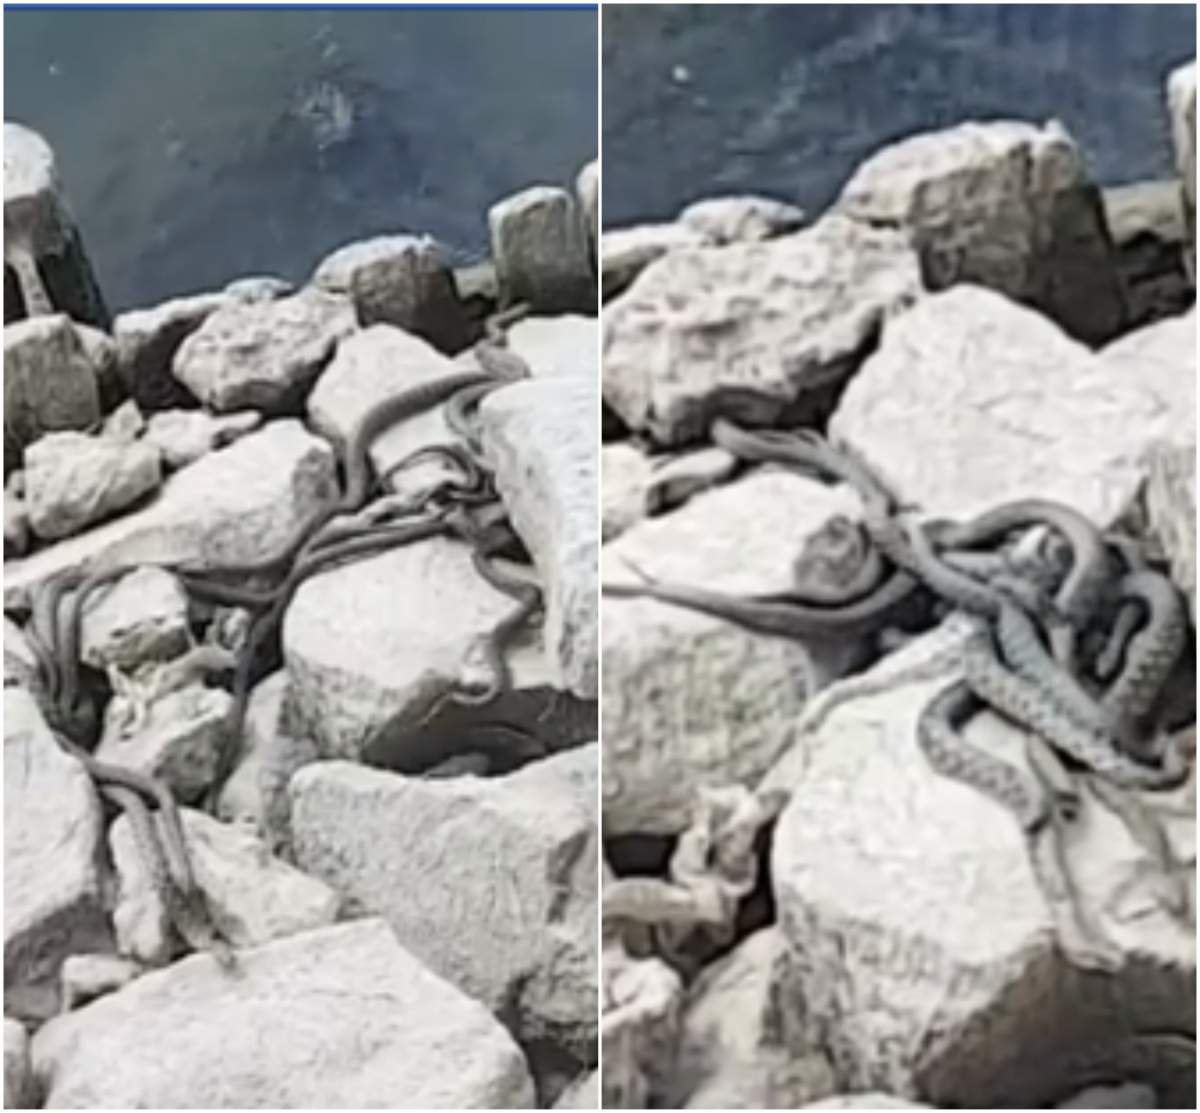 Cuib de șerpi pe malul Begăi. Imagini înspăimântătoare surprinse de un timișorean: ”Uită-te de unde ies, ferească Dumnezeu” / VIDEO